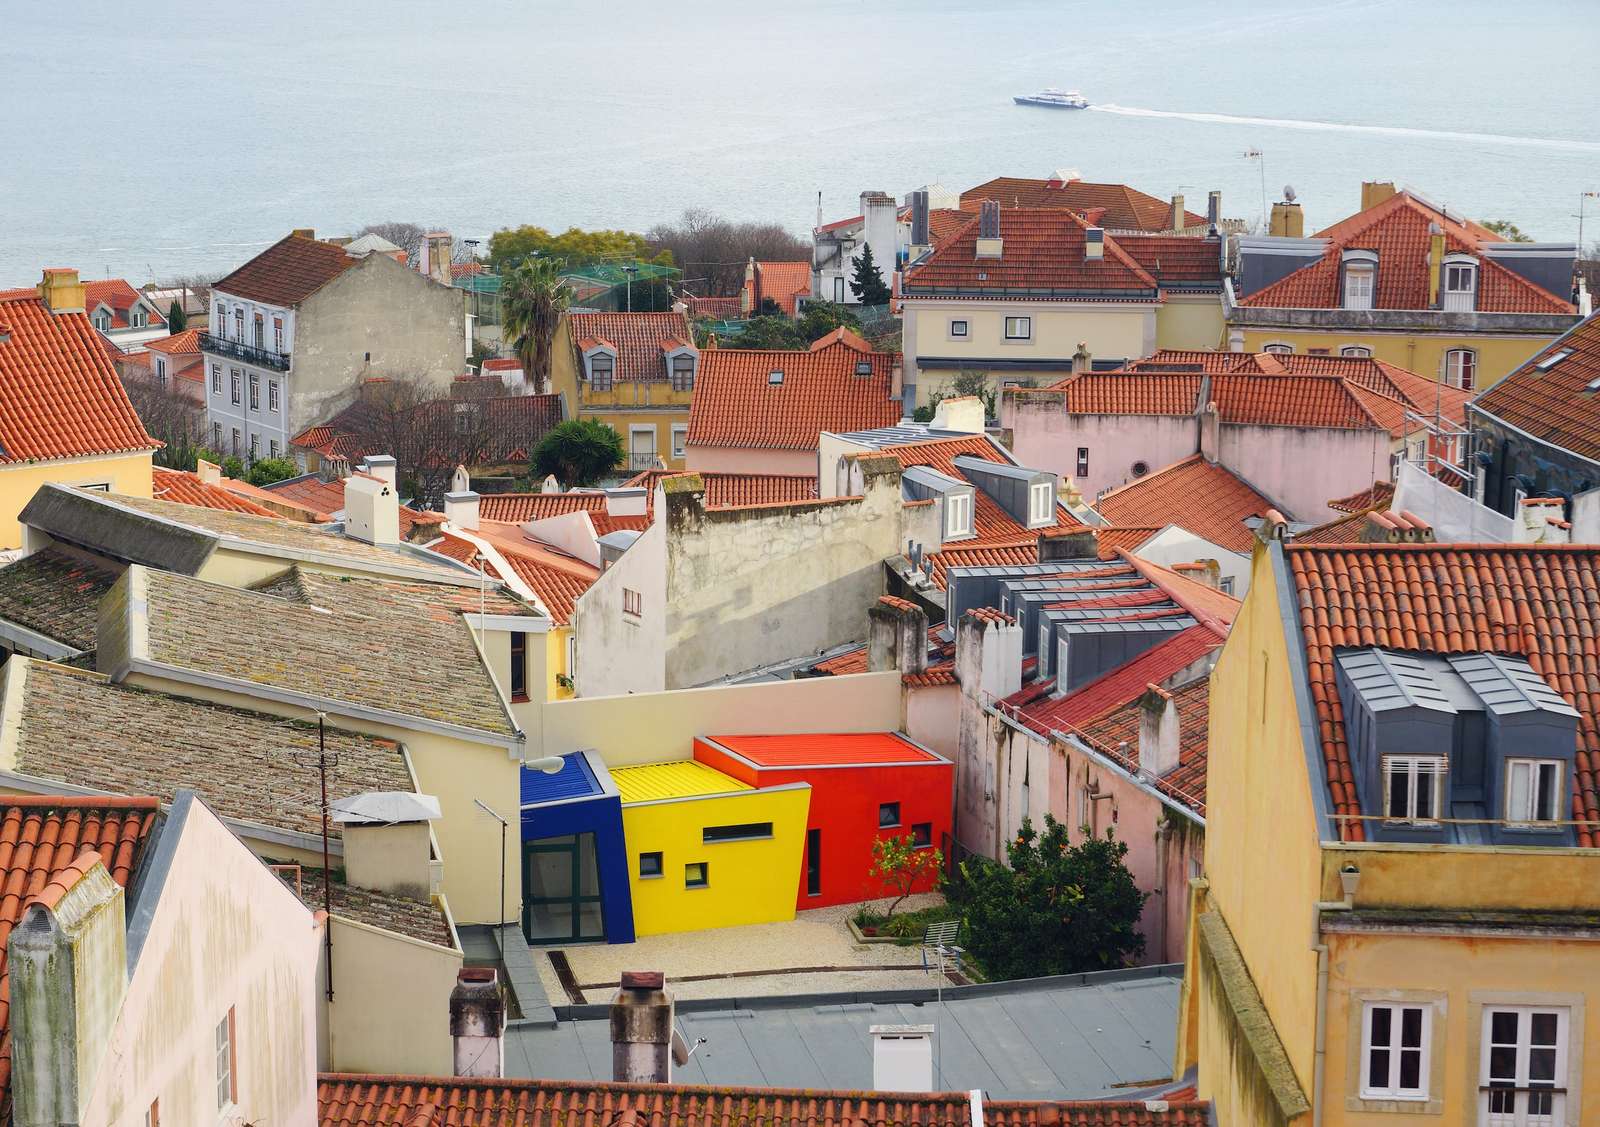 Лиссабон, Португалия пазл онлайн